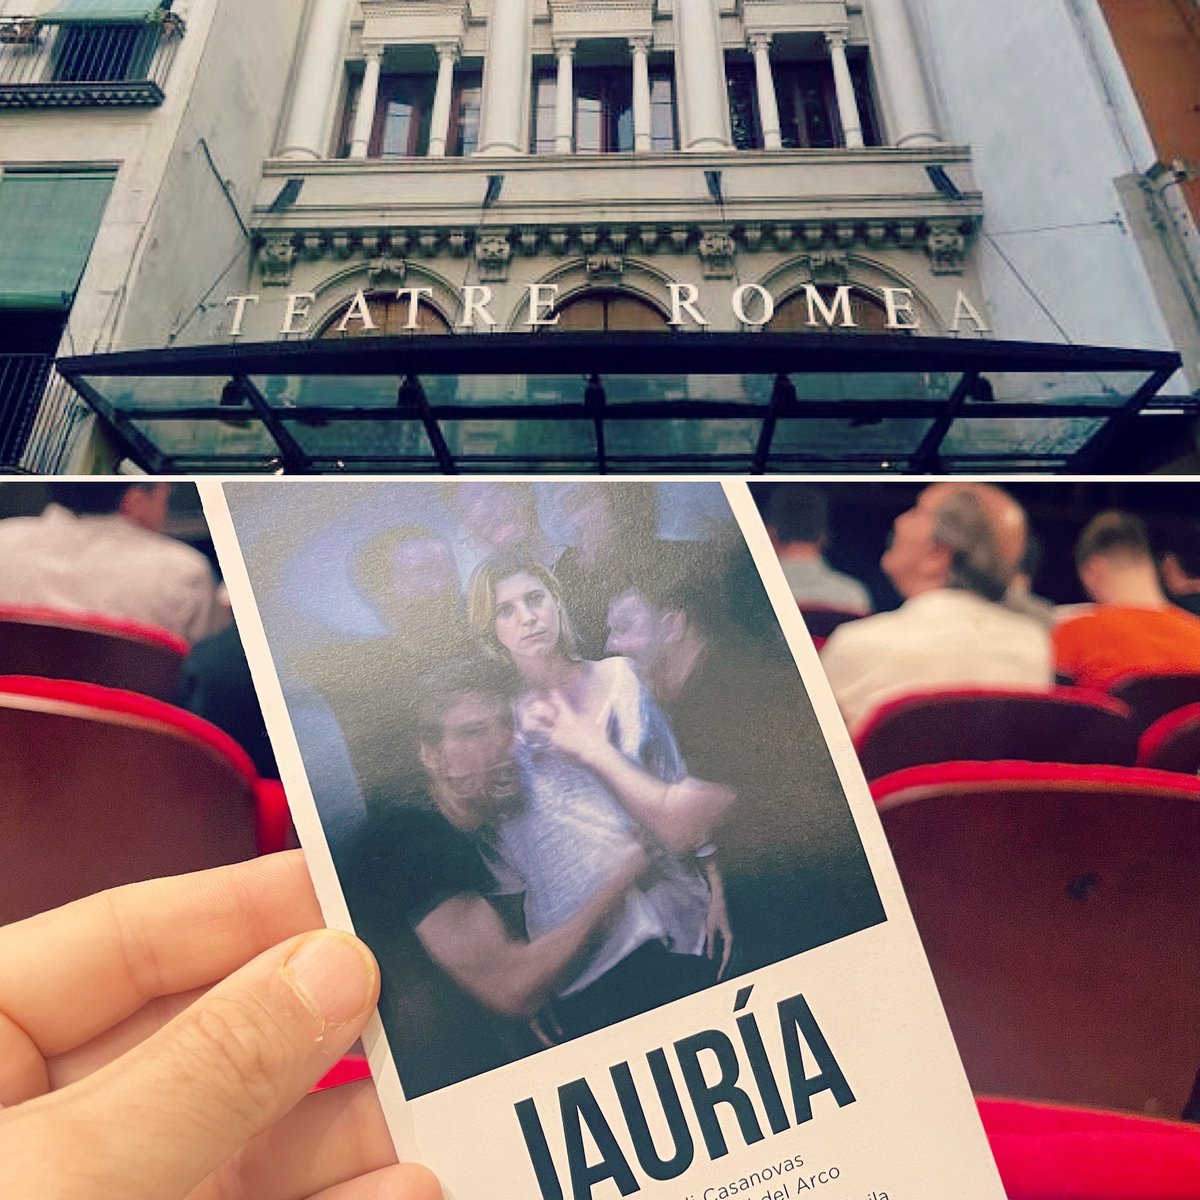 Cal anar més al teatre! Vespre @Teatre_Romea #Jauría @Jordi_Casanovas, una ficció documental a partir de les declaracions dels cinc acusats i la denunciant en el judici de “La Manada” sobre la violació grupal a Pamplona #sanfermin la nit del 6 de juliol de 2016. Un cas que va